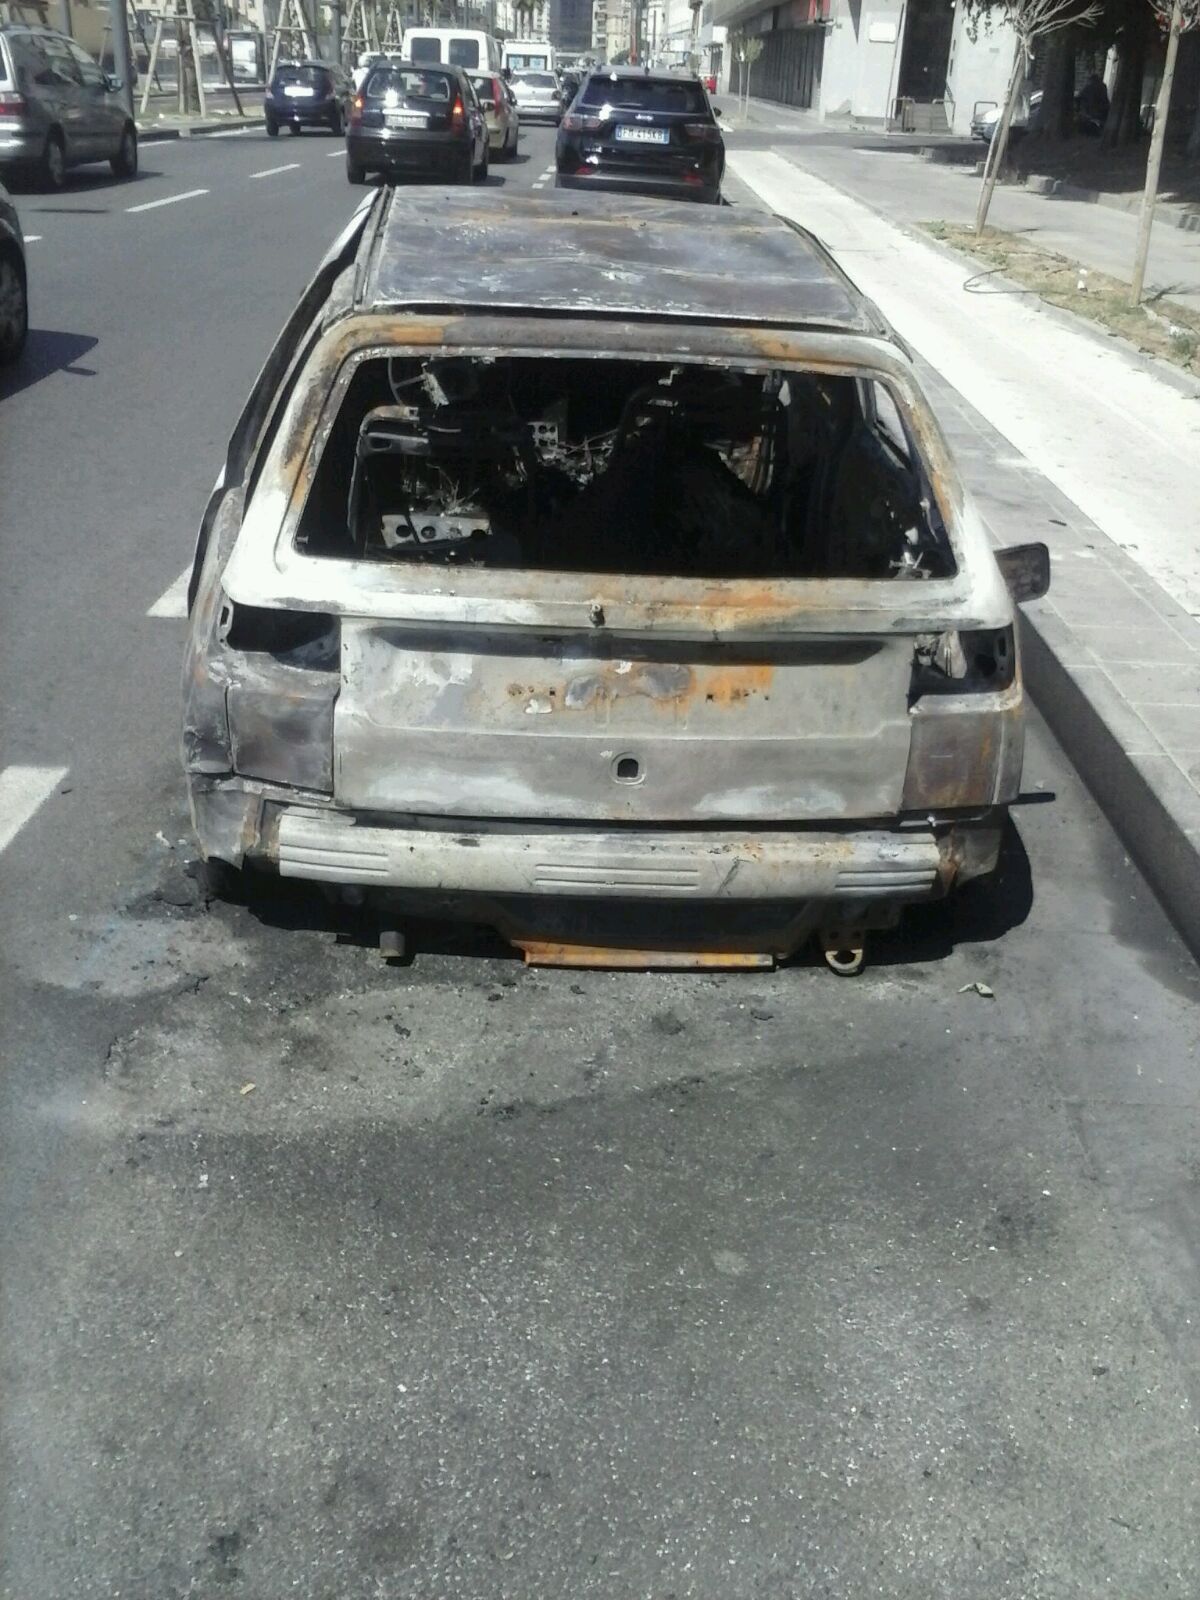 Napoli, il caso dei clochard davanti all’ospedale finisce sulle tv nazionali e l’auto incendiata è ancora lì